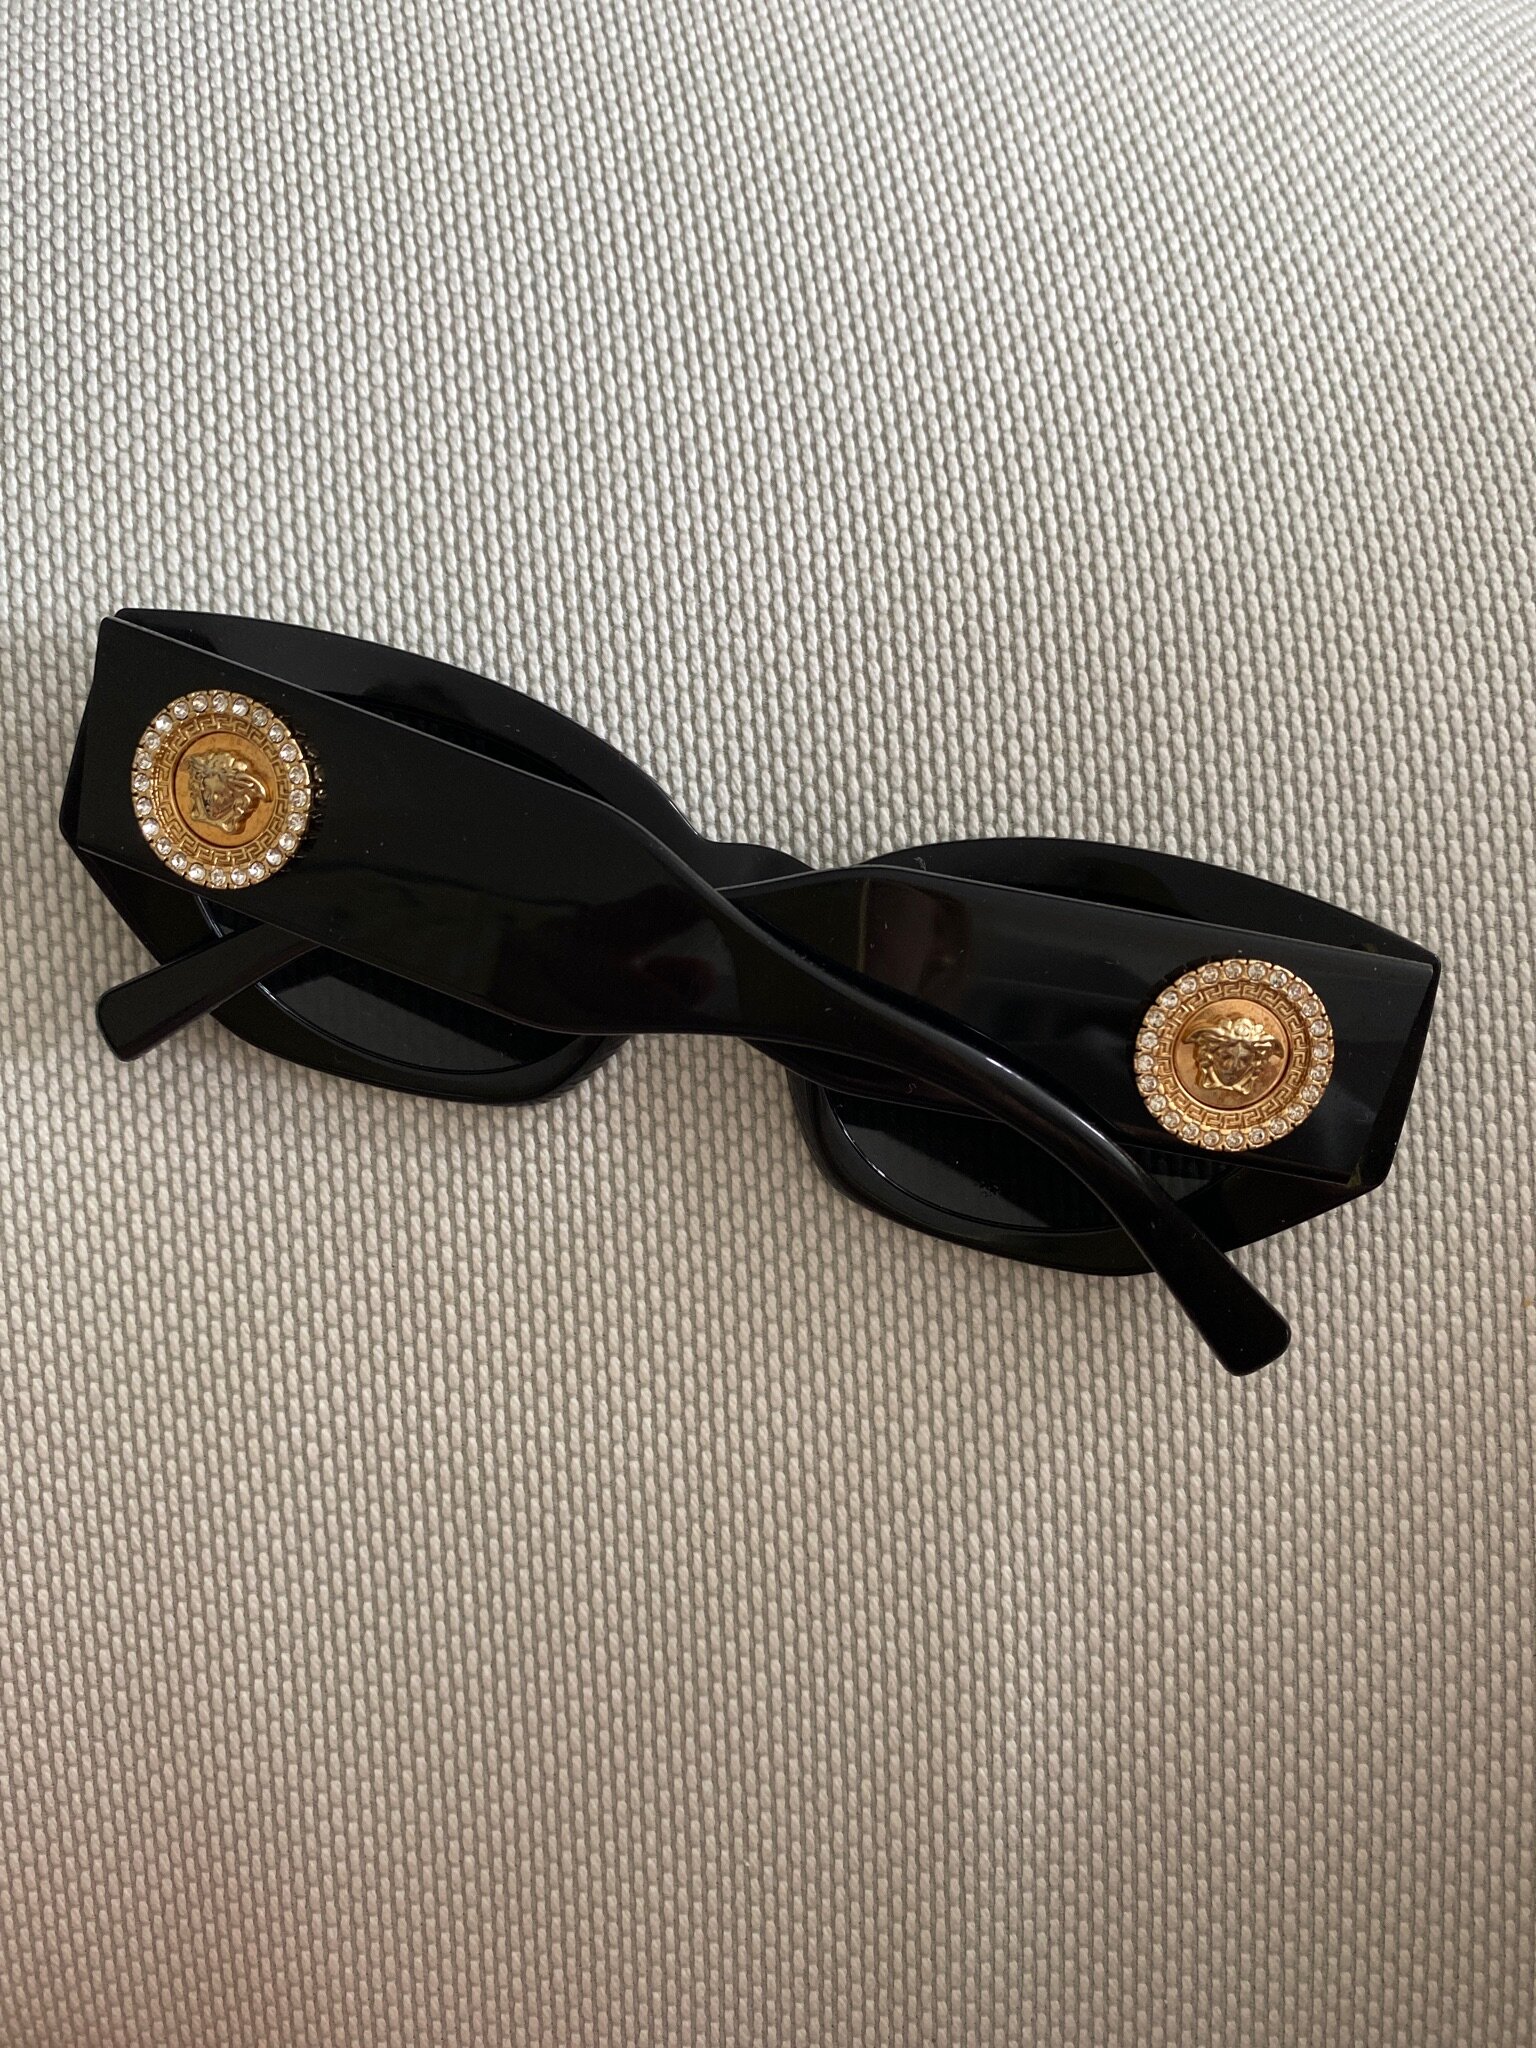 Versace solbriller, 1.100 kr. 